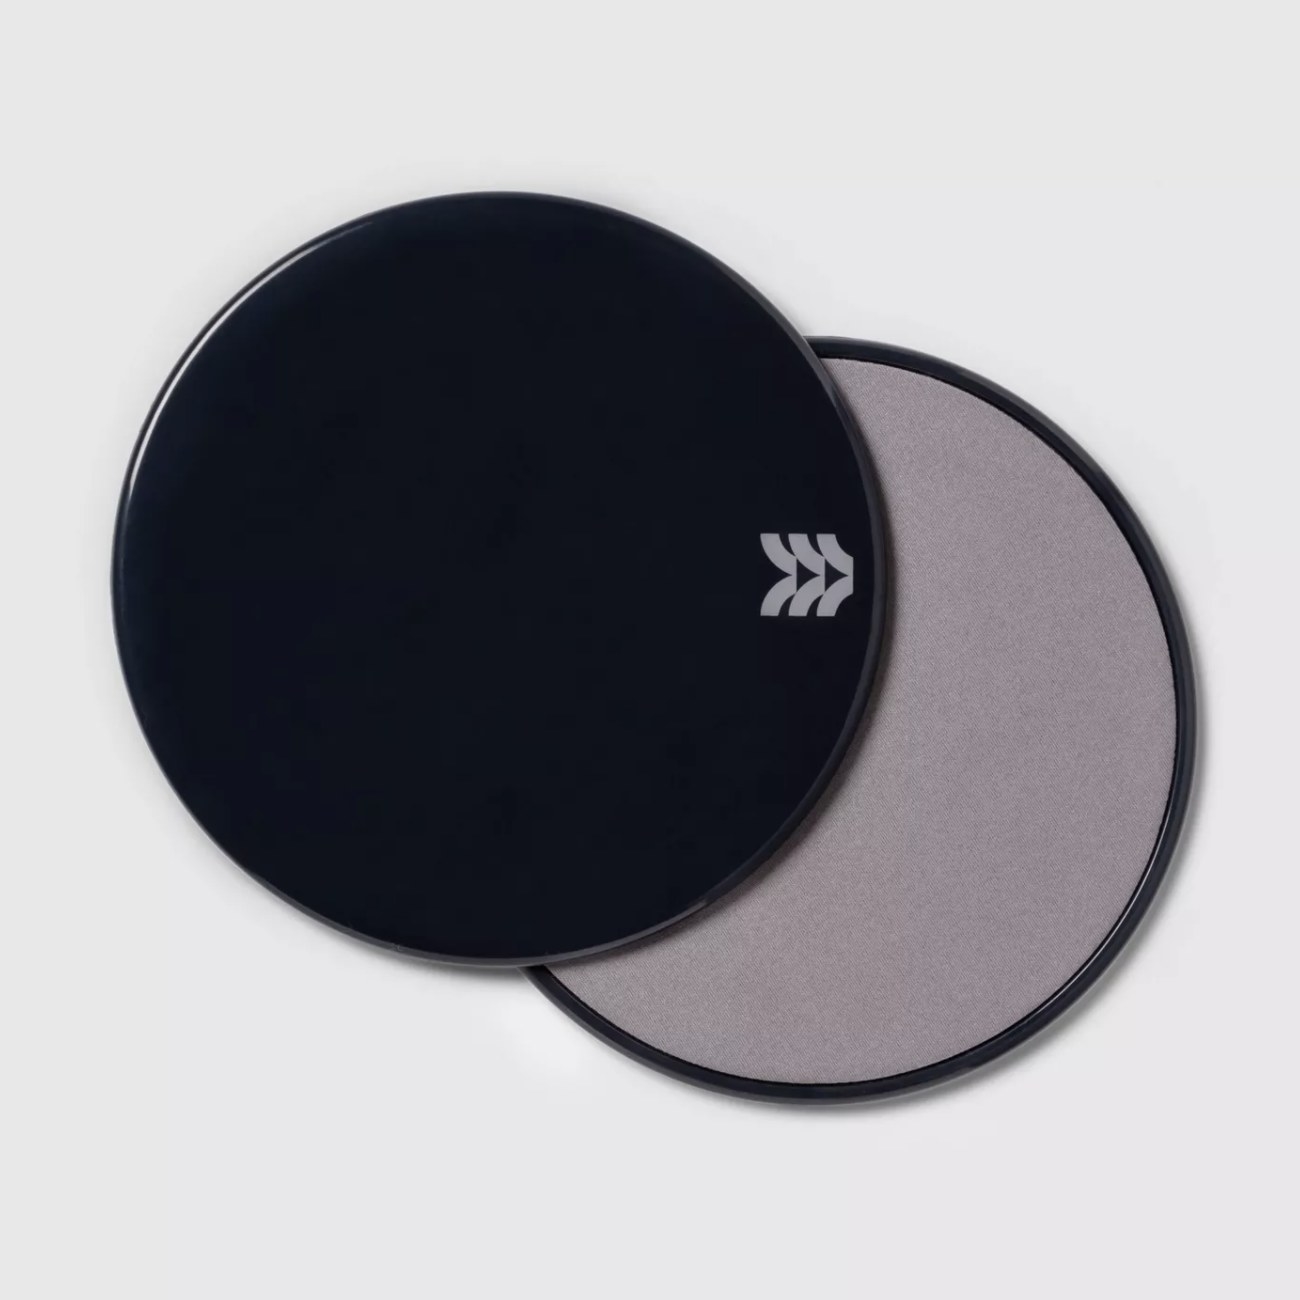 The black discs